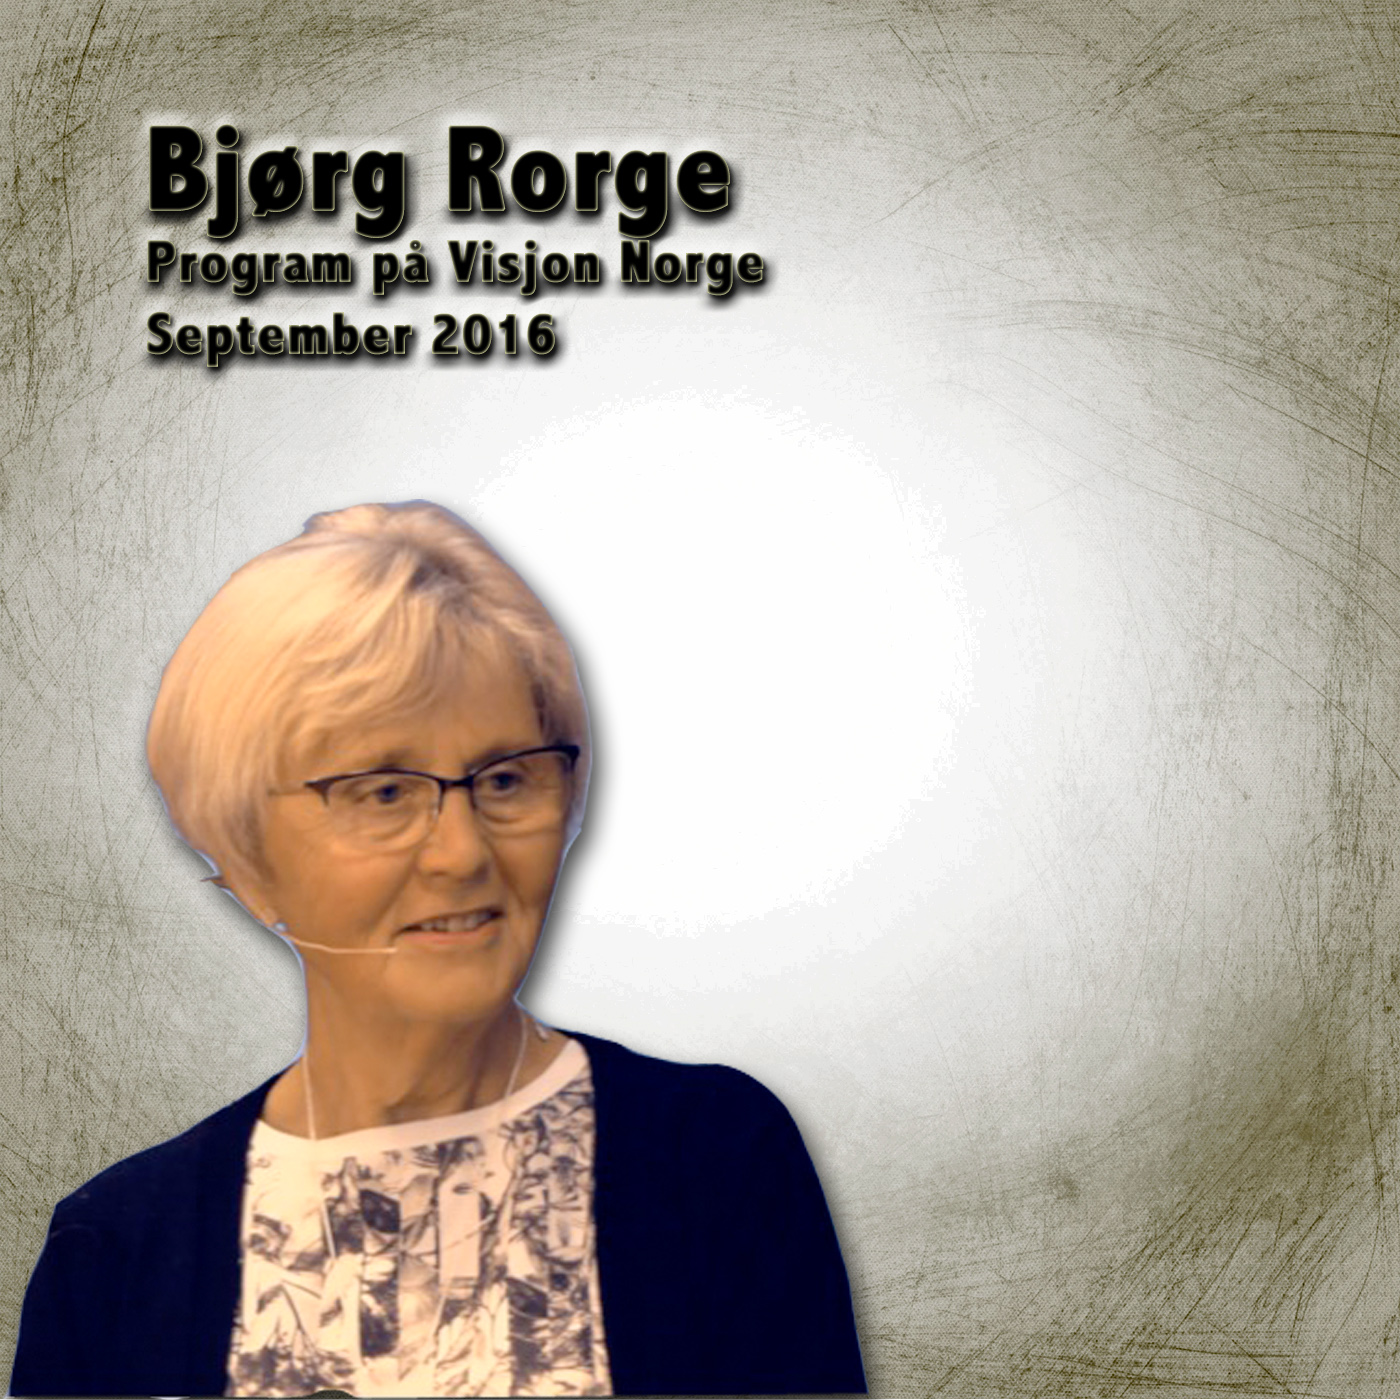 Bjørg Rorge